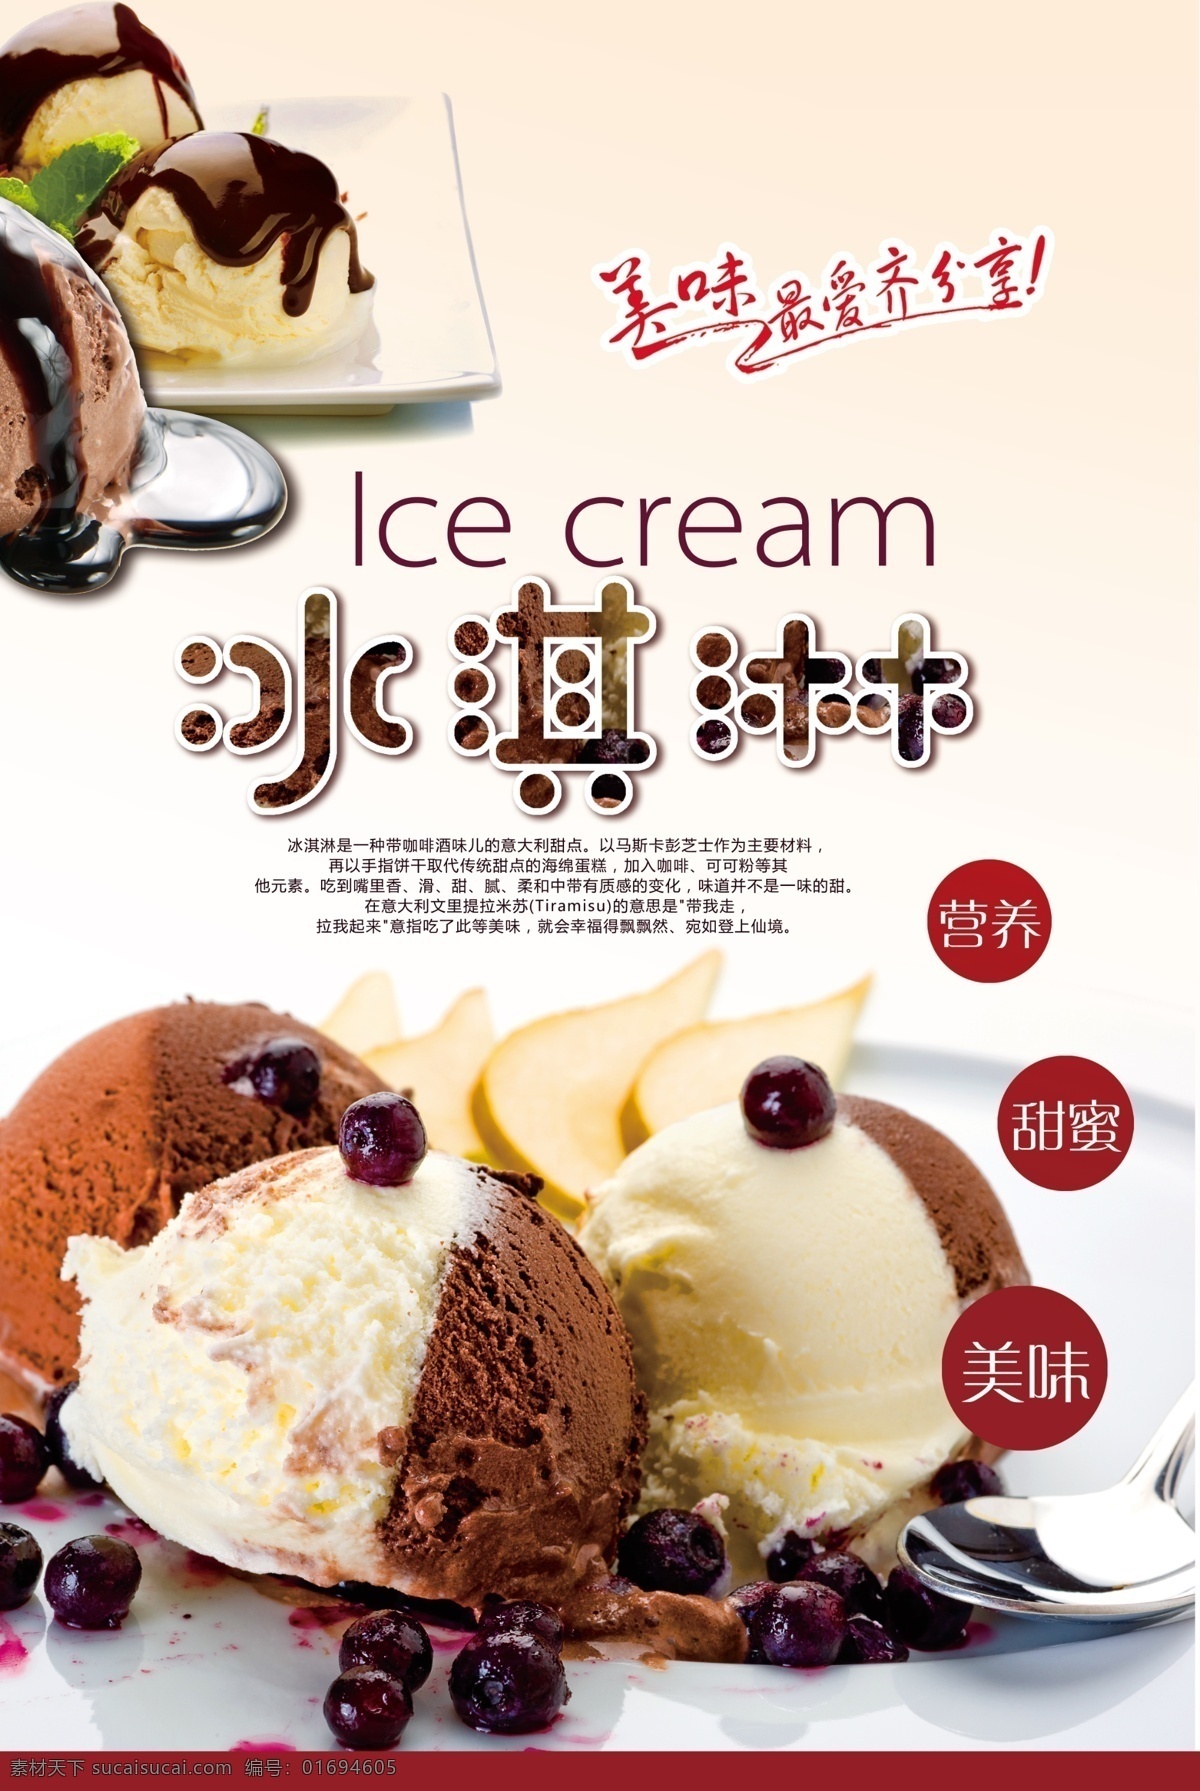 冰激凌海报 冰激凌 冰淇淋 巧克力冰激凌 巧克力冰淇淋 双色冰激凌 海报